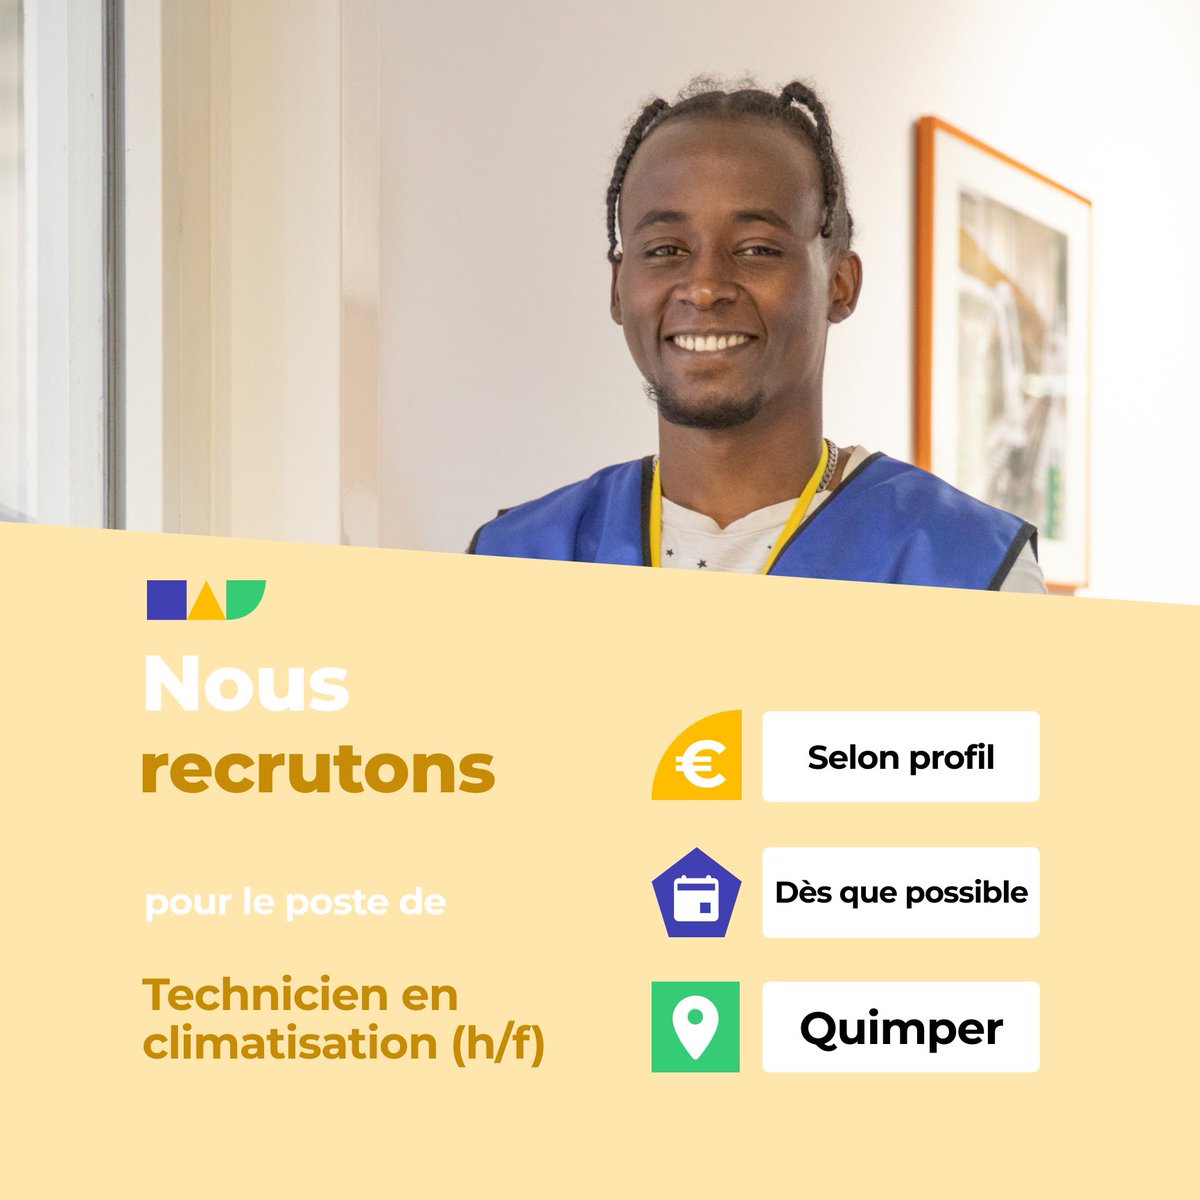 🛎️ Nouvelle offre d'emploi : Technicien en climatisation (h/f) 🌎 Quimper (29000) 📅 Démarrage dans les 7 prochains jours 👉 Plus d'infos : jobs.iziwork.com/fr/offre-emplo… #recrutement #intérim #emploi #OffreEmploi #job #iziwork